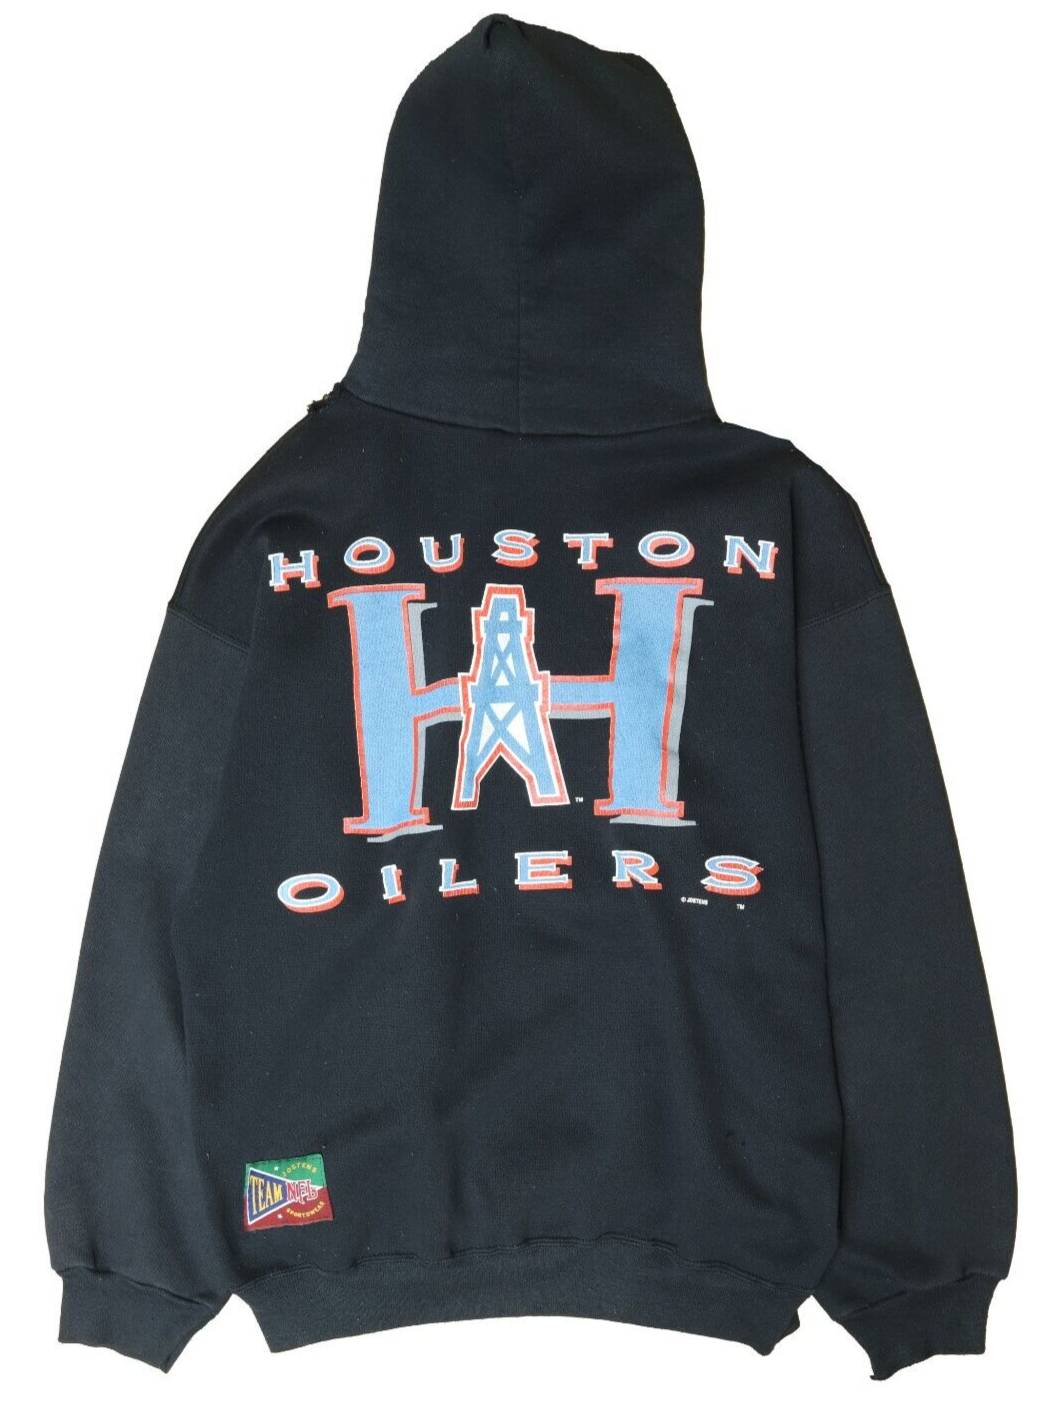 Vintage Houston Oilers Sweatshirt Hoodie Size XL Black 90s NFL